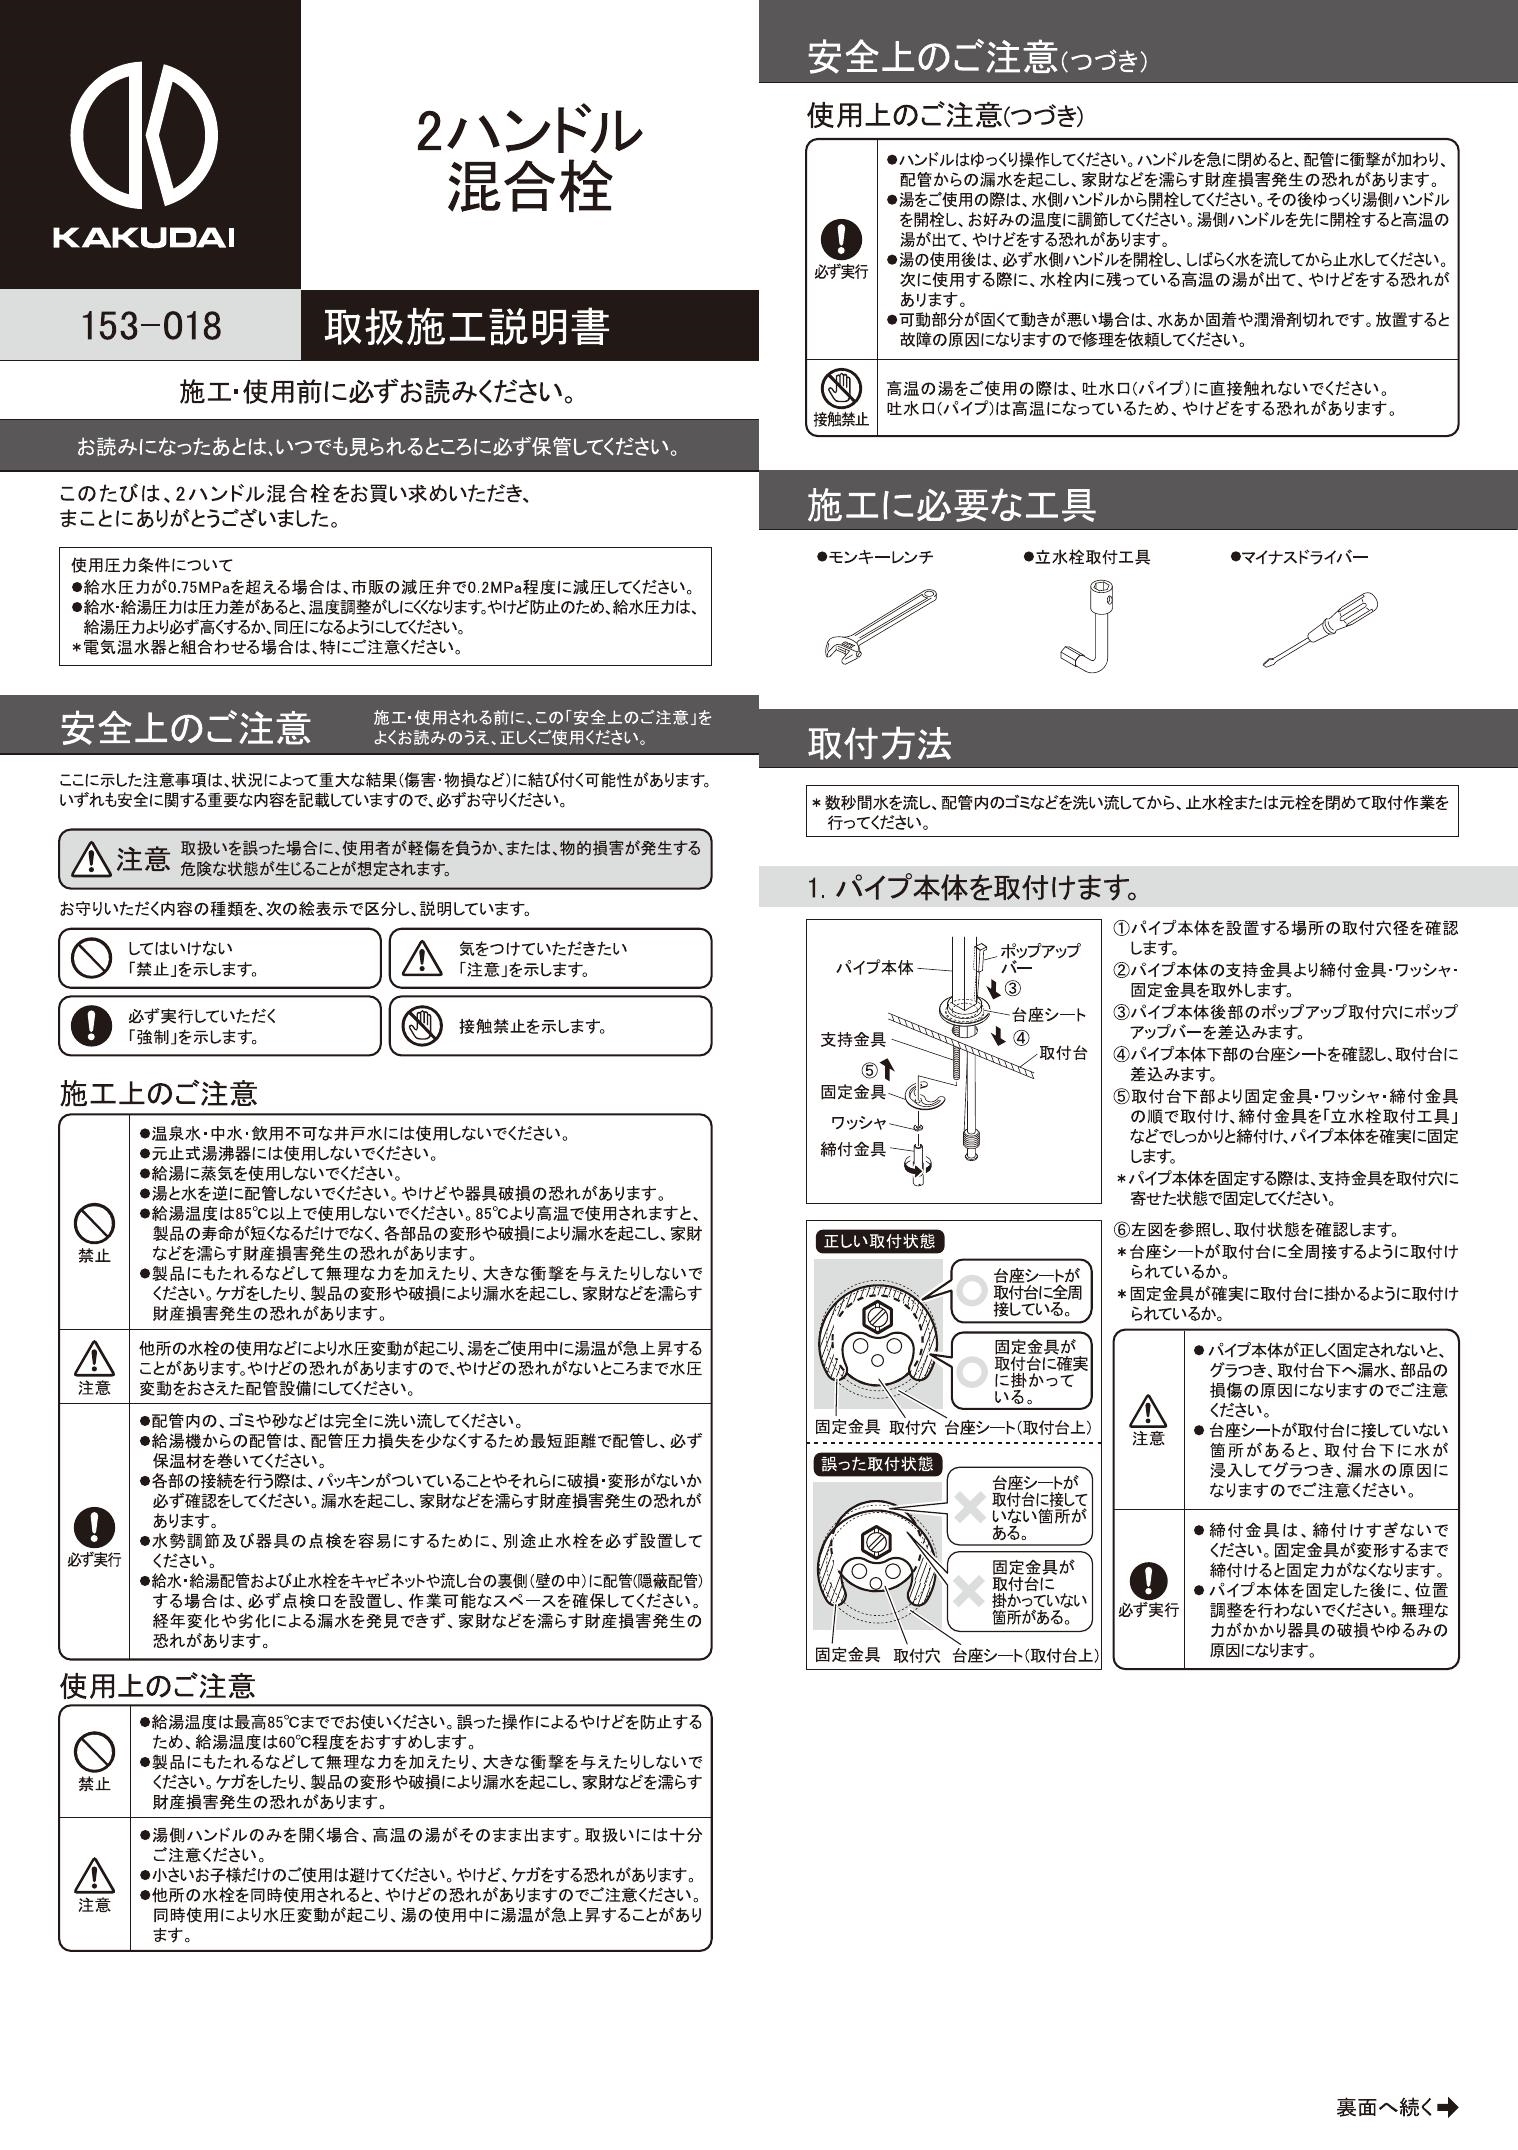 キッチン用蛇口 カクダイ コルディア 2ハンドル混合栓 153-006 - 3